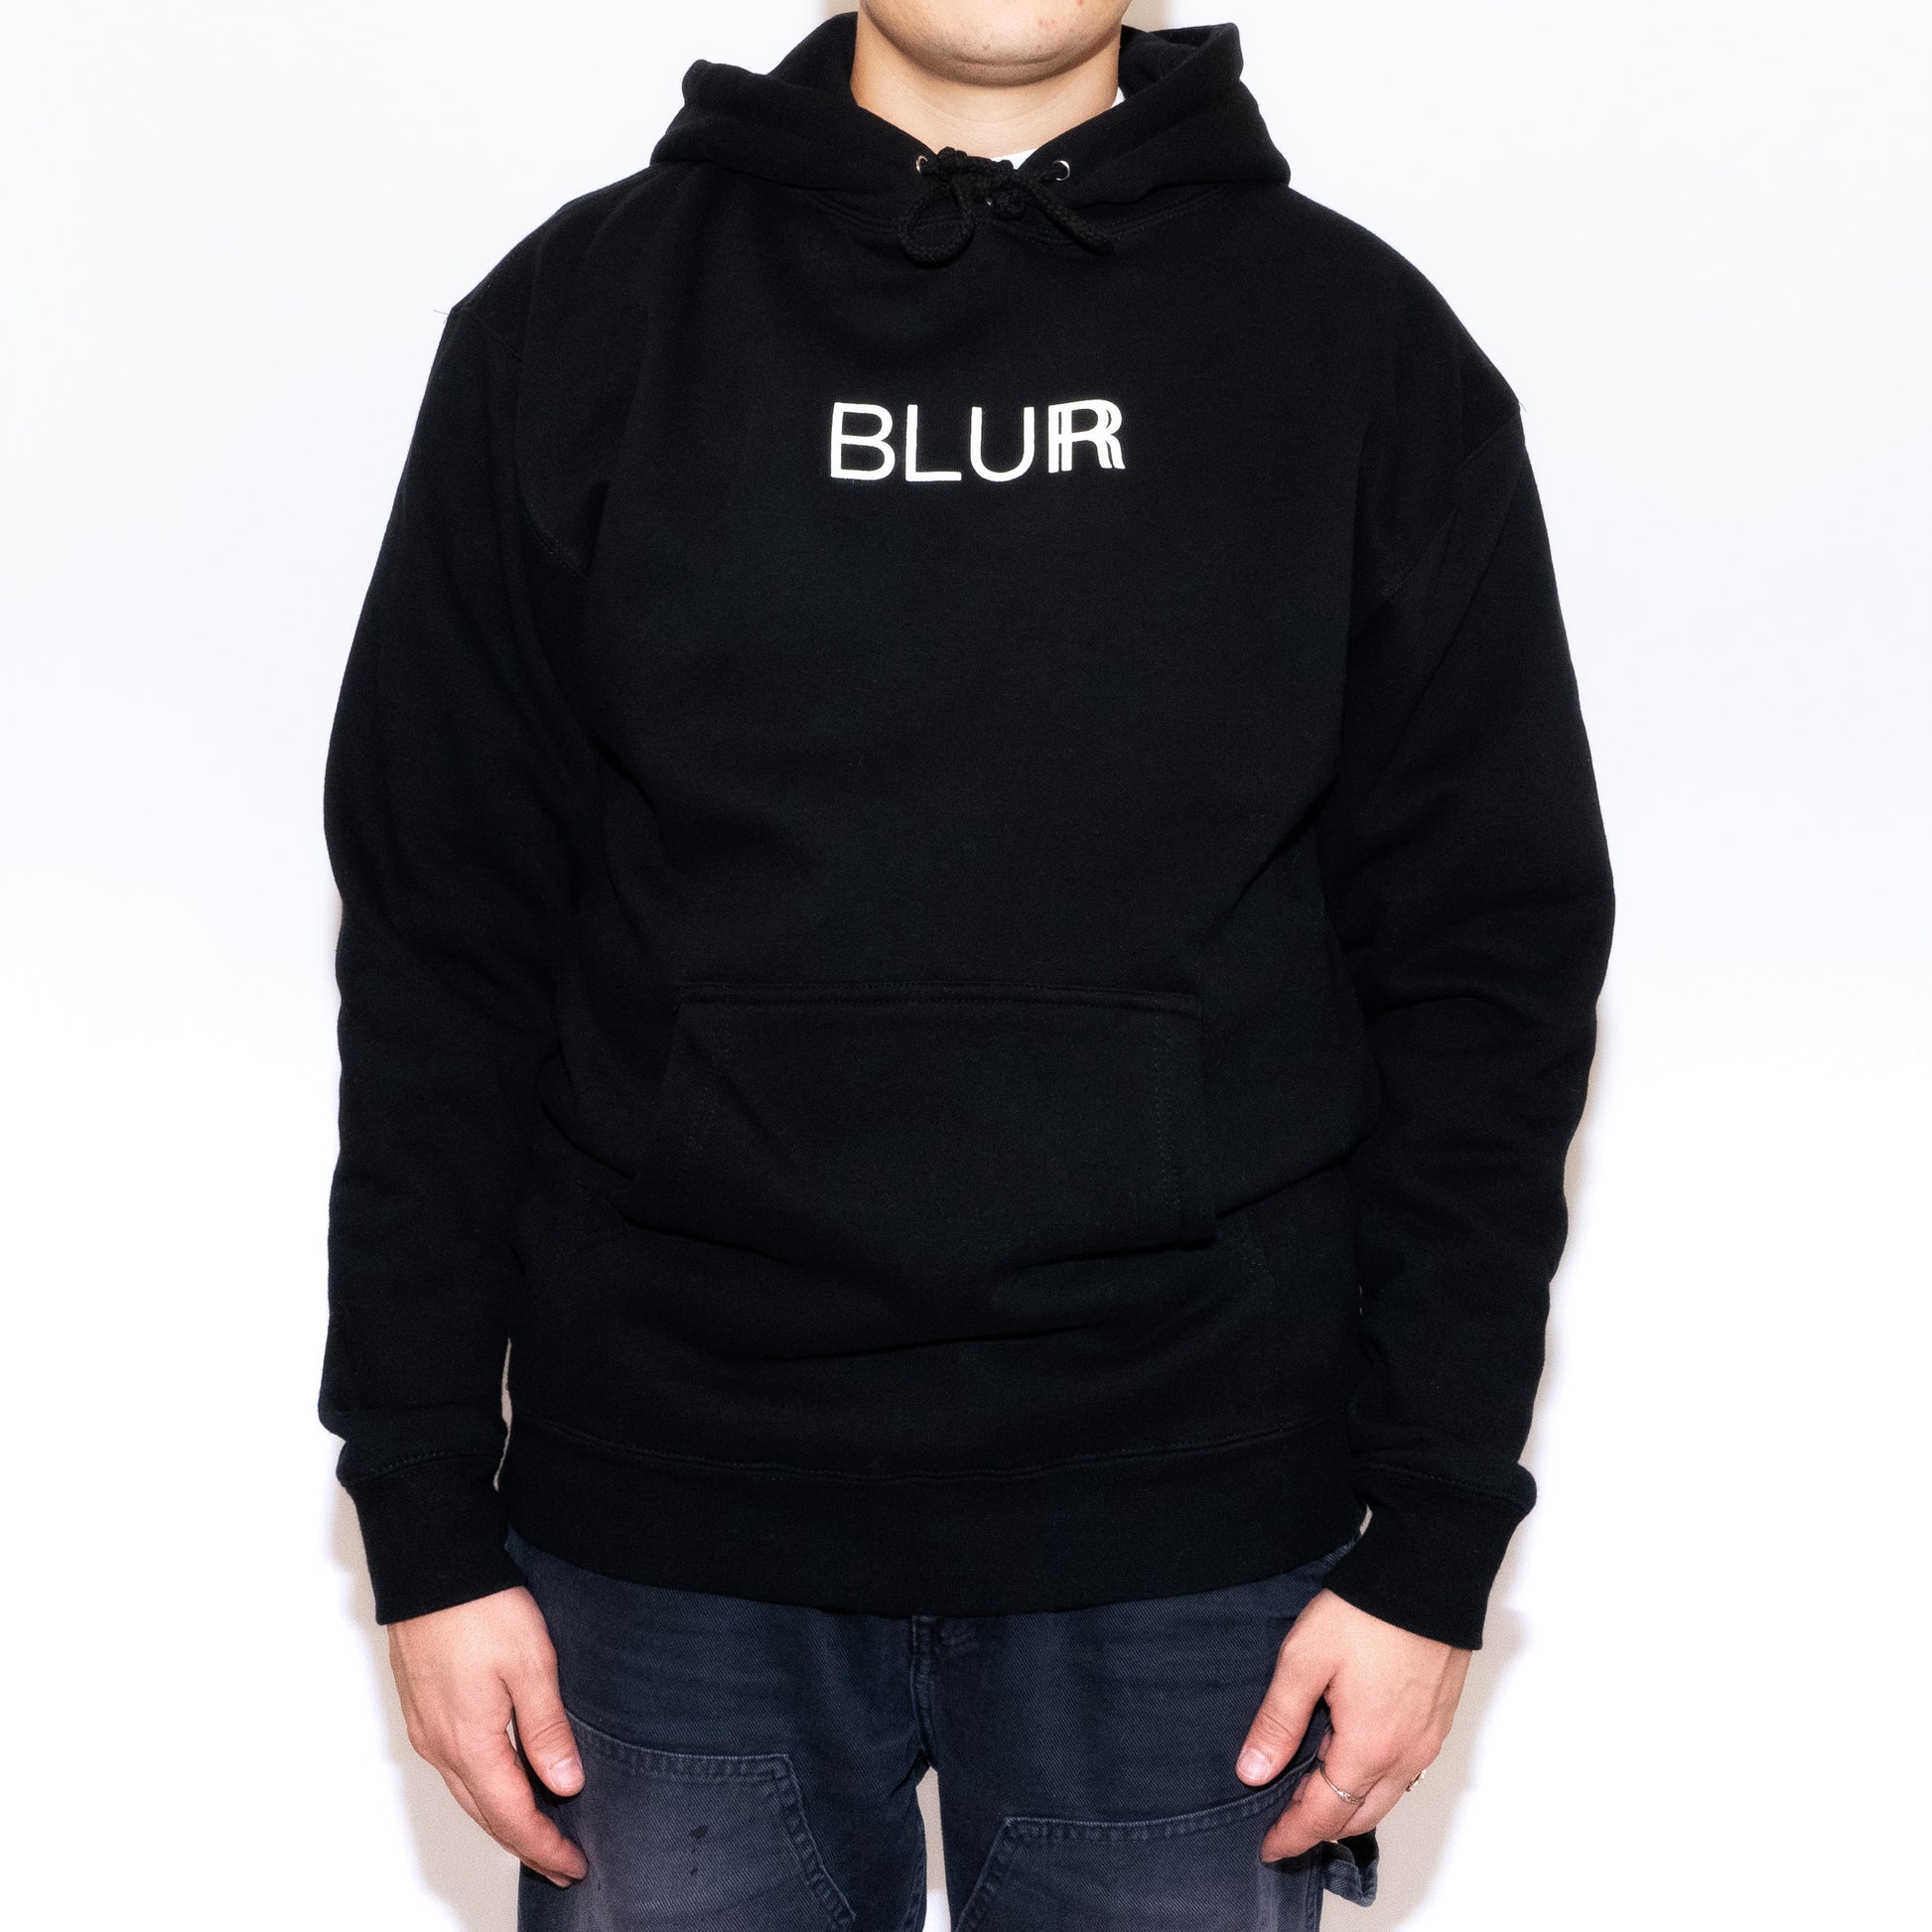 Blur, Classic hoodie, Blur Hoodie, Blur apparel, black hoodie